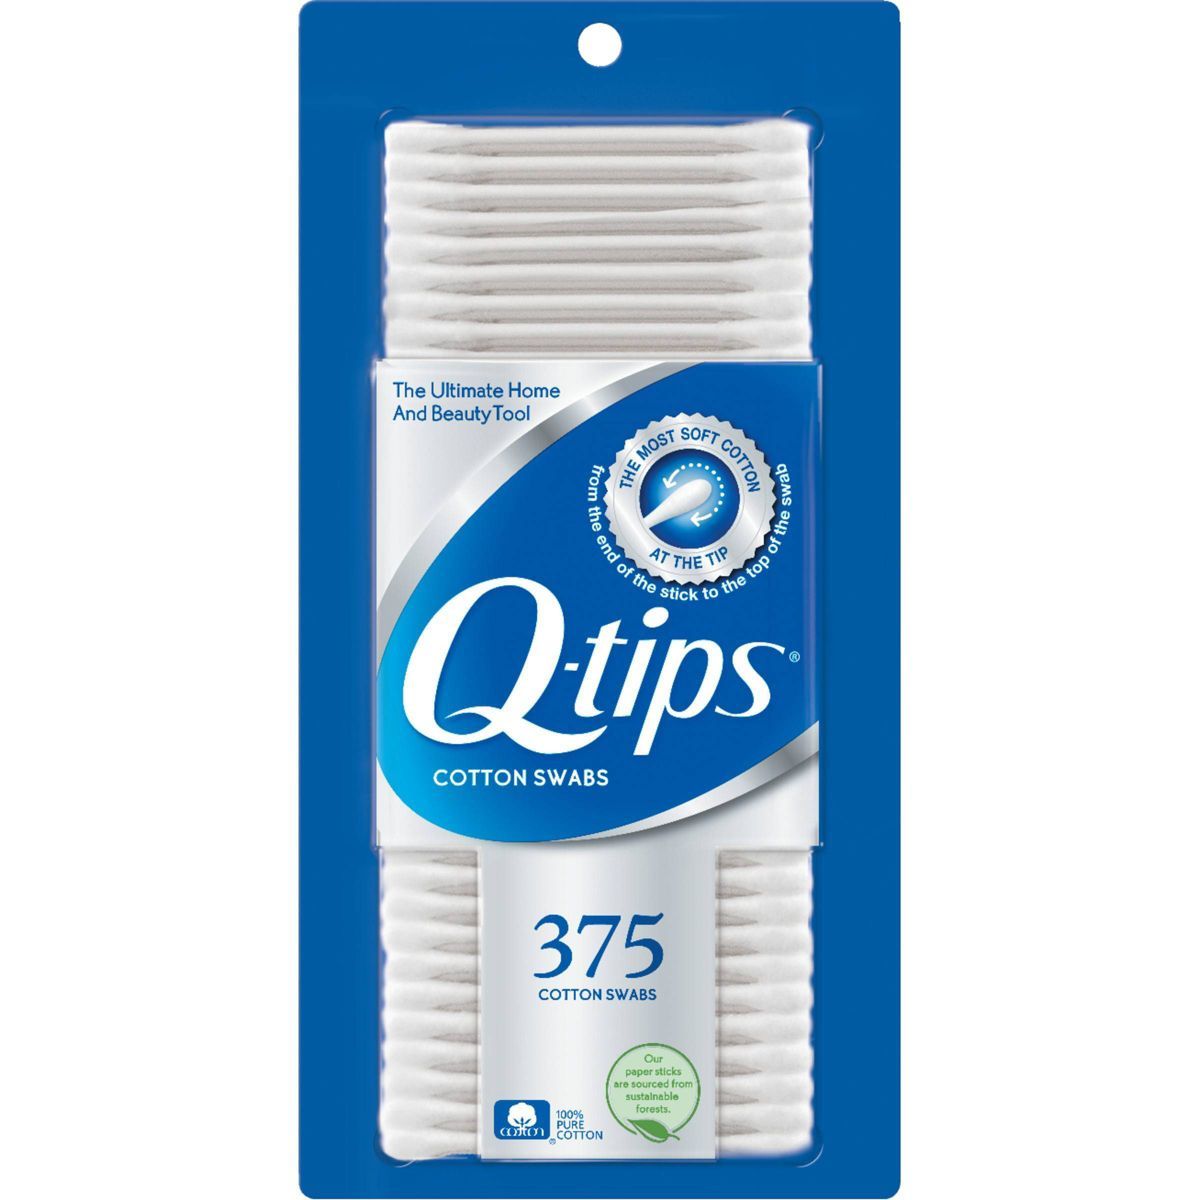 Q-Tips Cotton Swabs - 375ct | Target